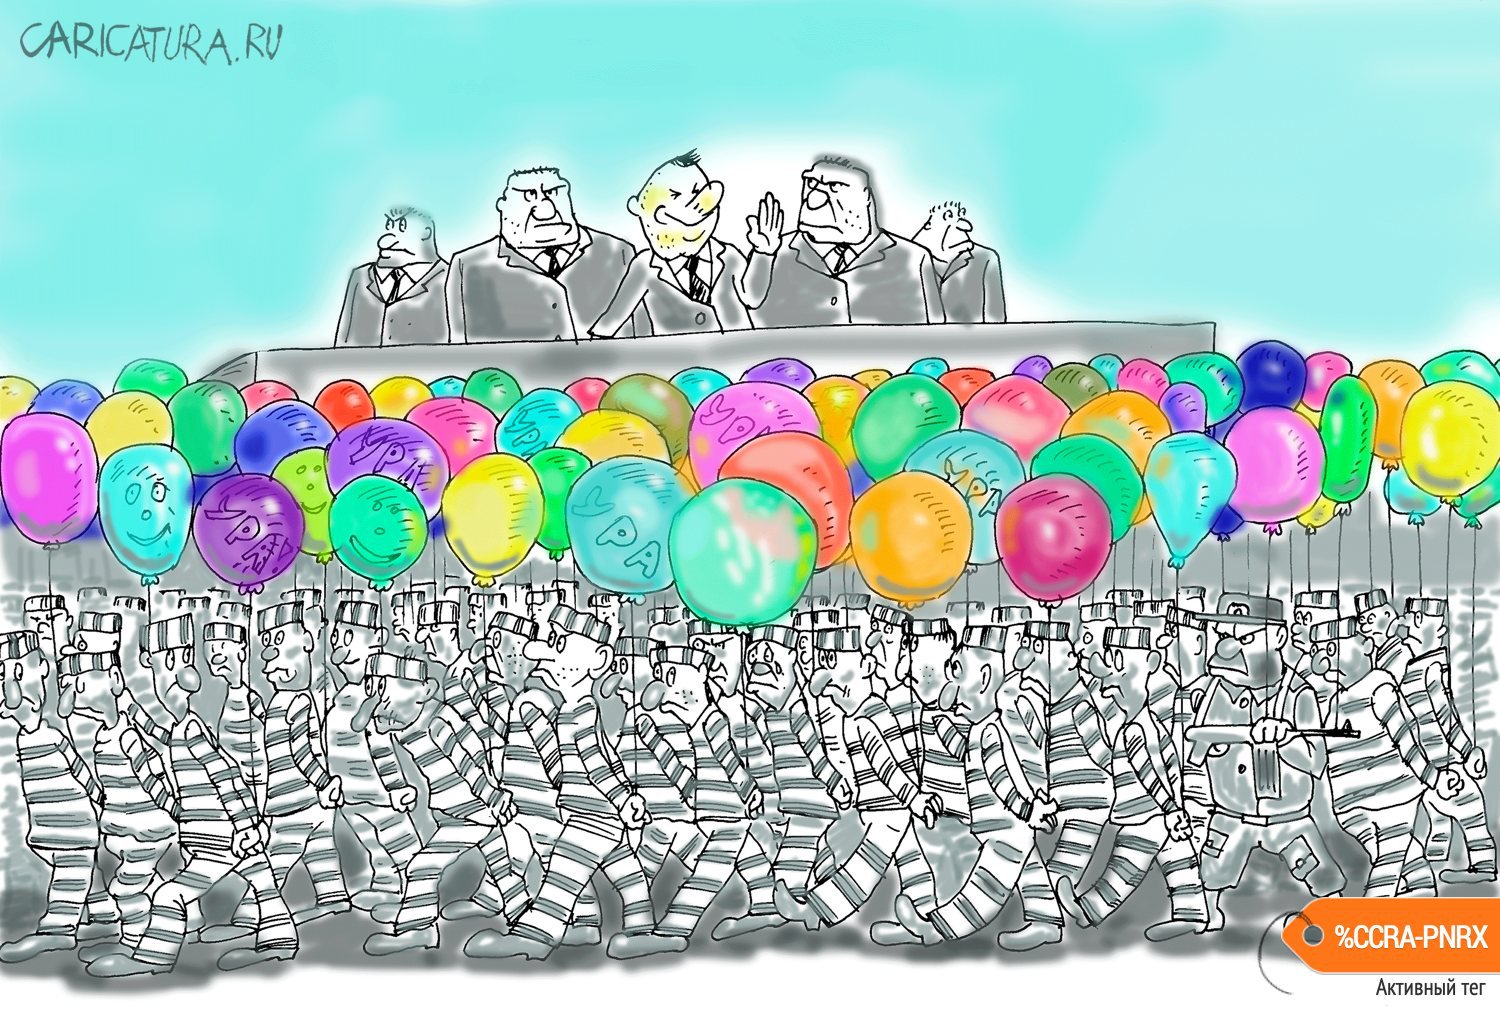 Карикатура "Парад", Булат Ирсаев